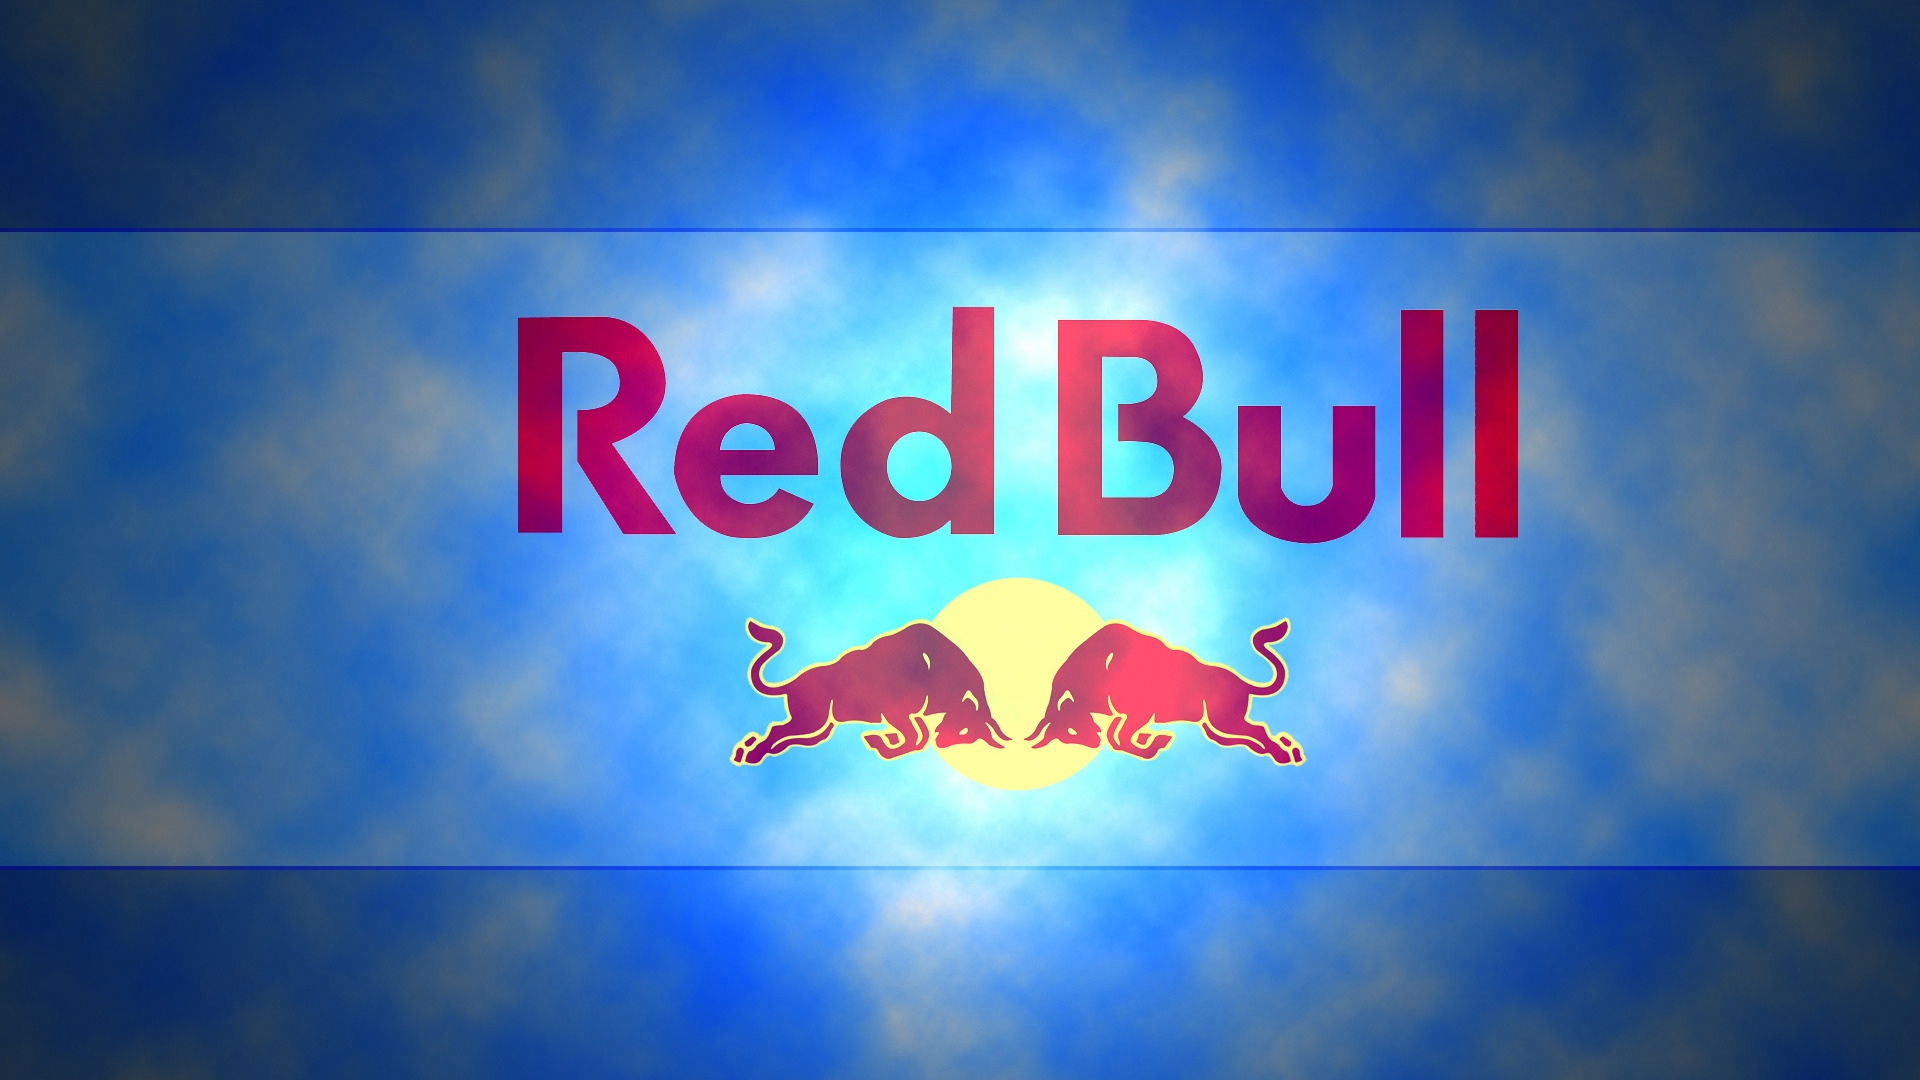 Red Bull Logo for 1920 x 1080 HDTV 1080p resolution